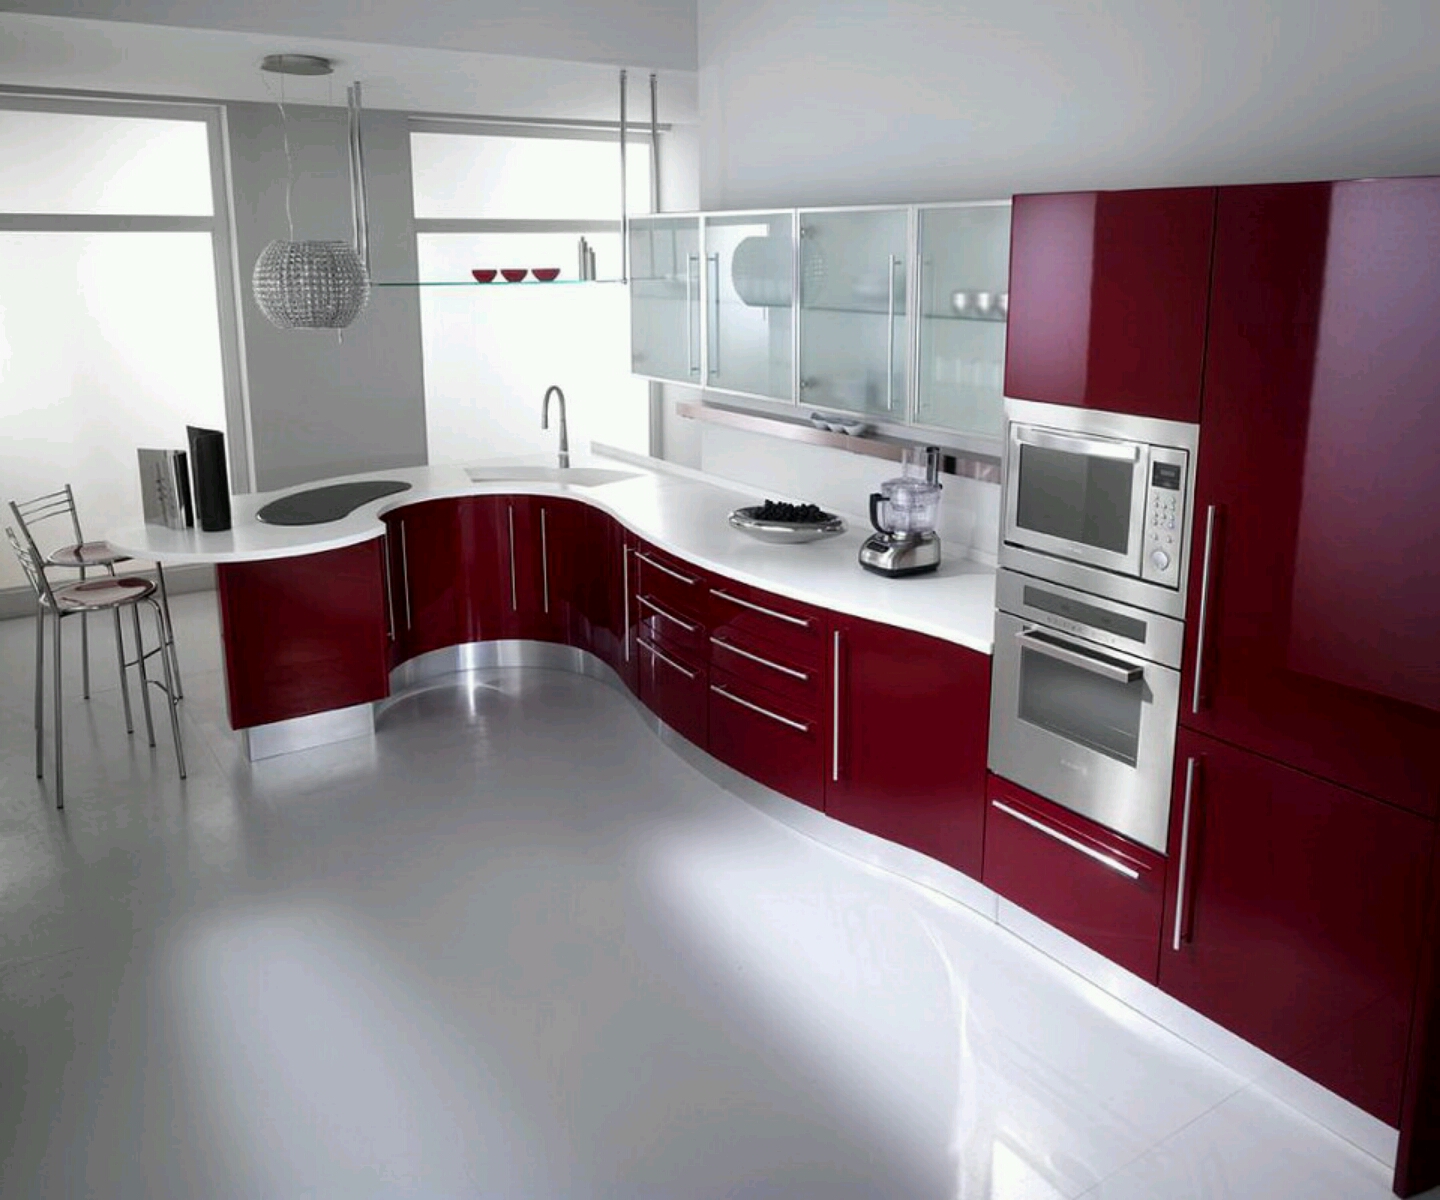  Modern kitchen cabinets designs Furniture Gallery